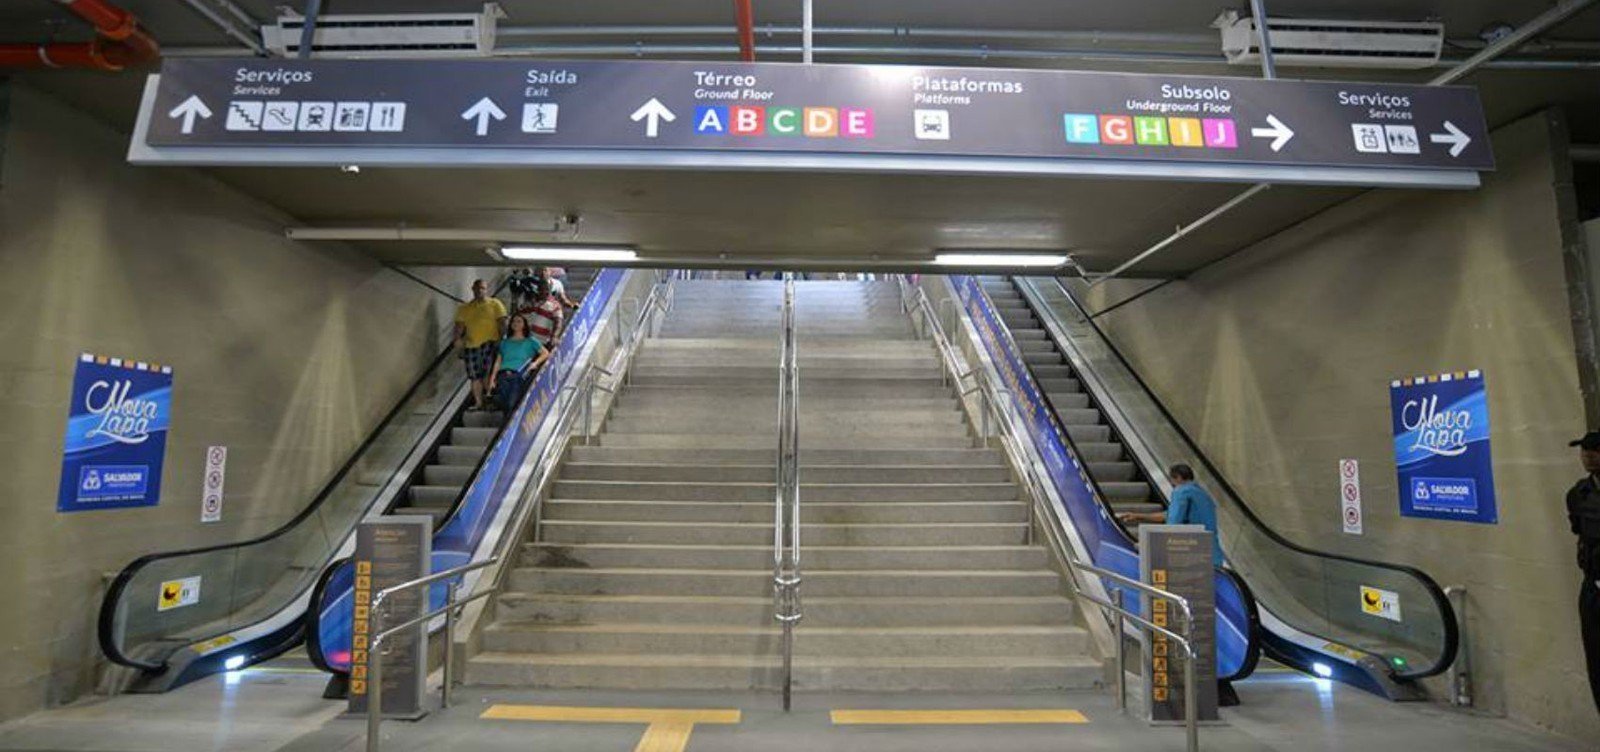 Pane elétrica interrompe escadas rolantes na Estação da Lapa e idosos reclamam de acessibilidade